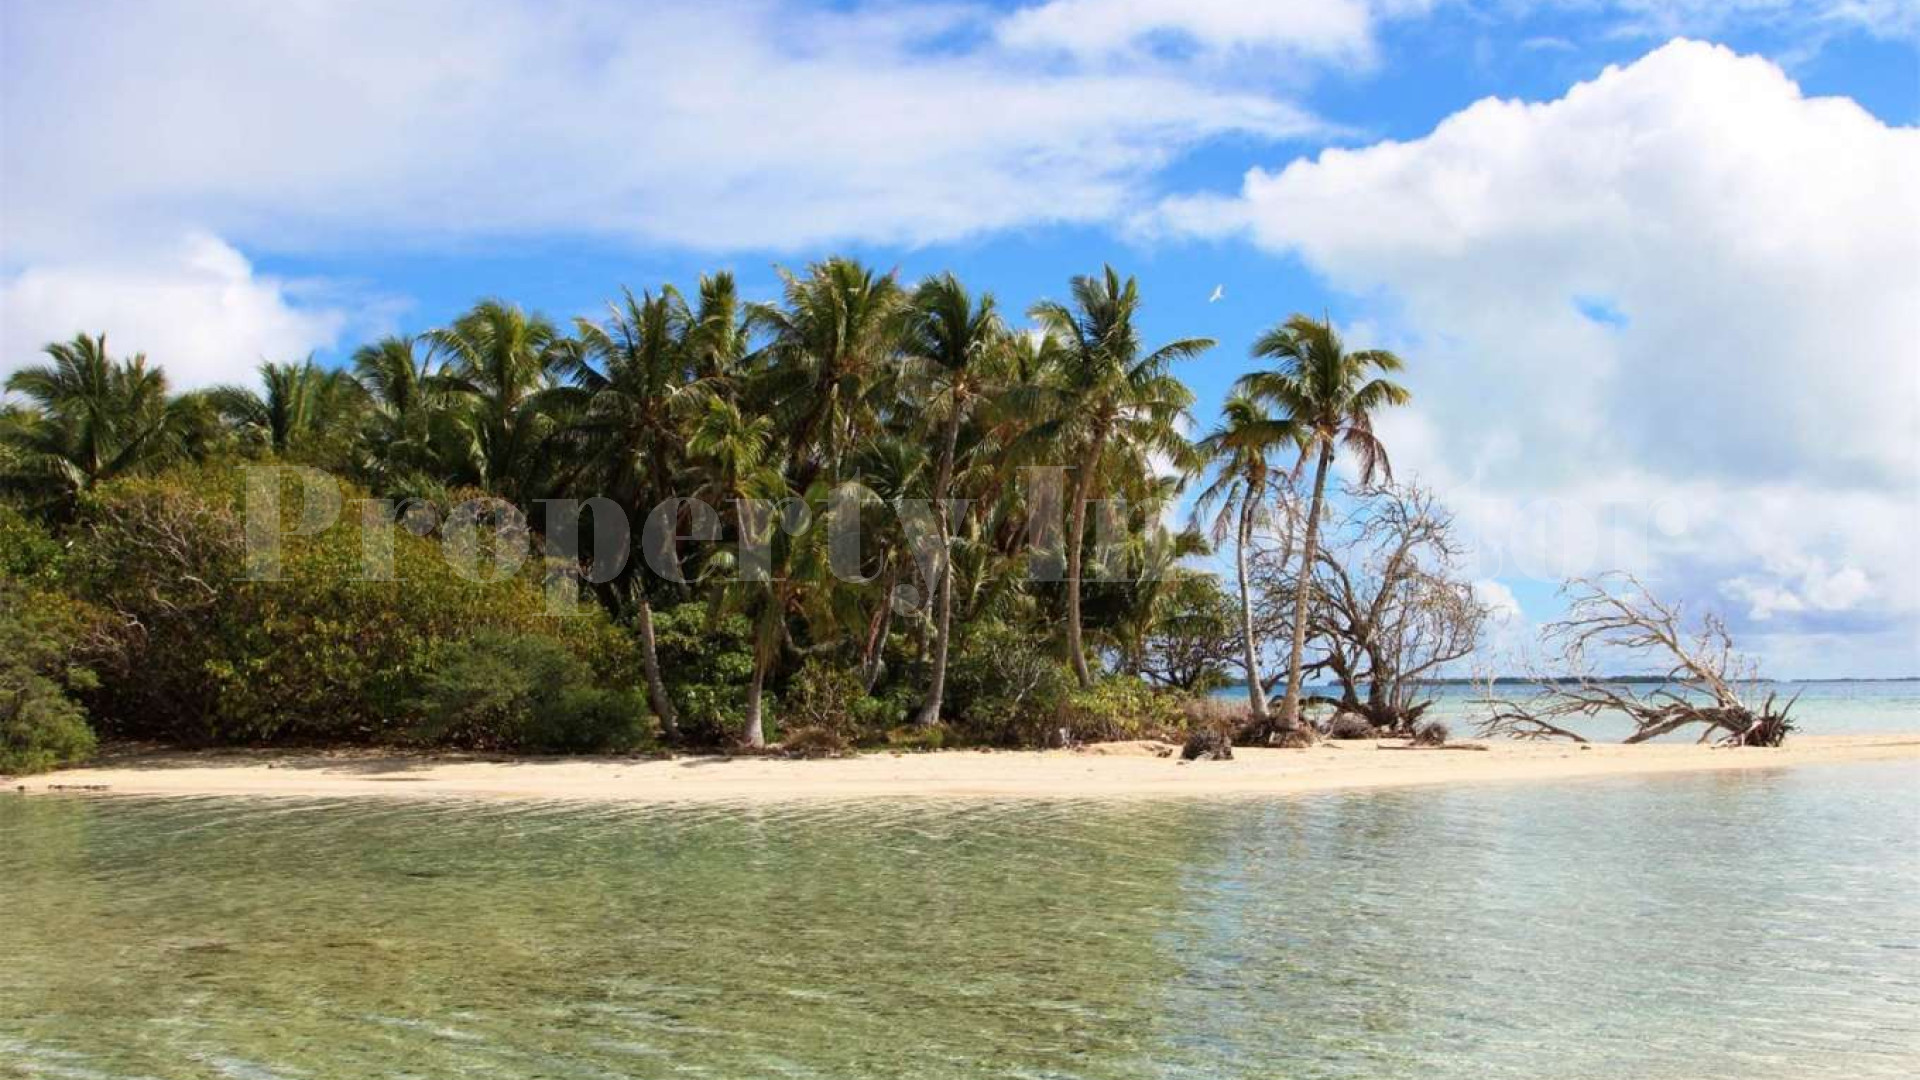 Продаётся дикий остров 0,7 га во Французской Полинезии